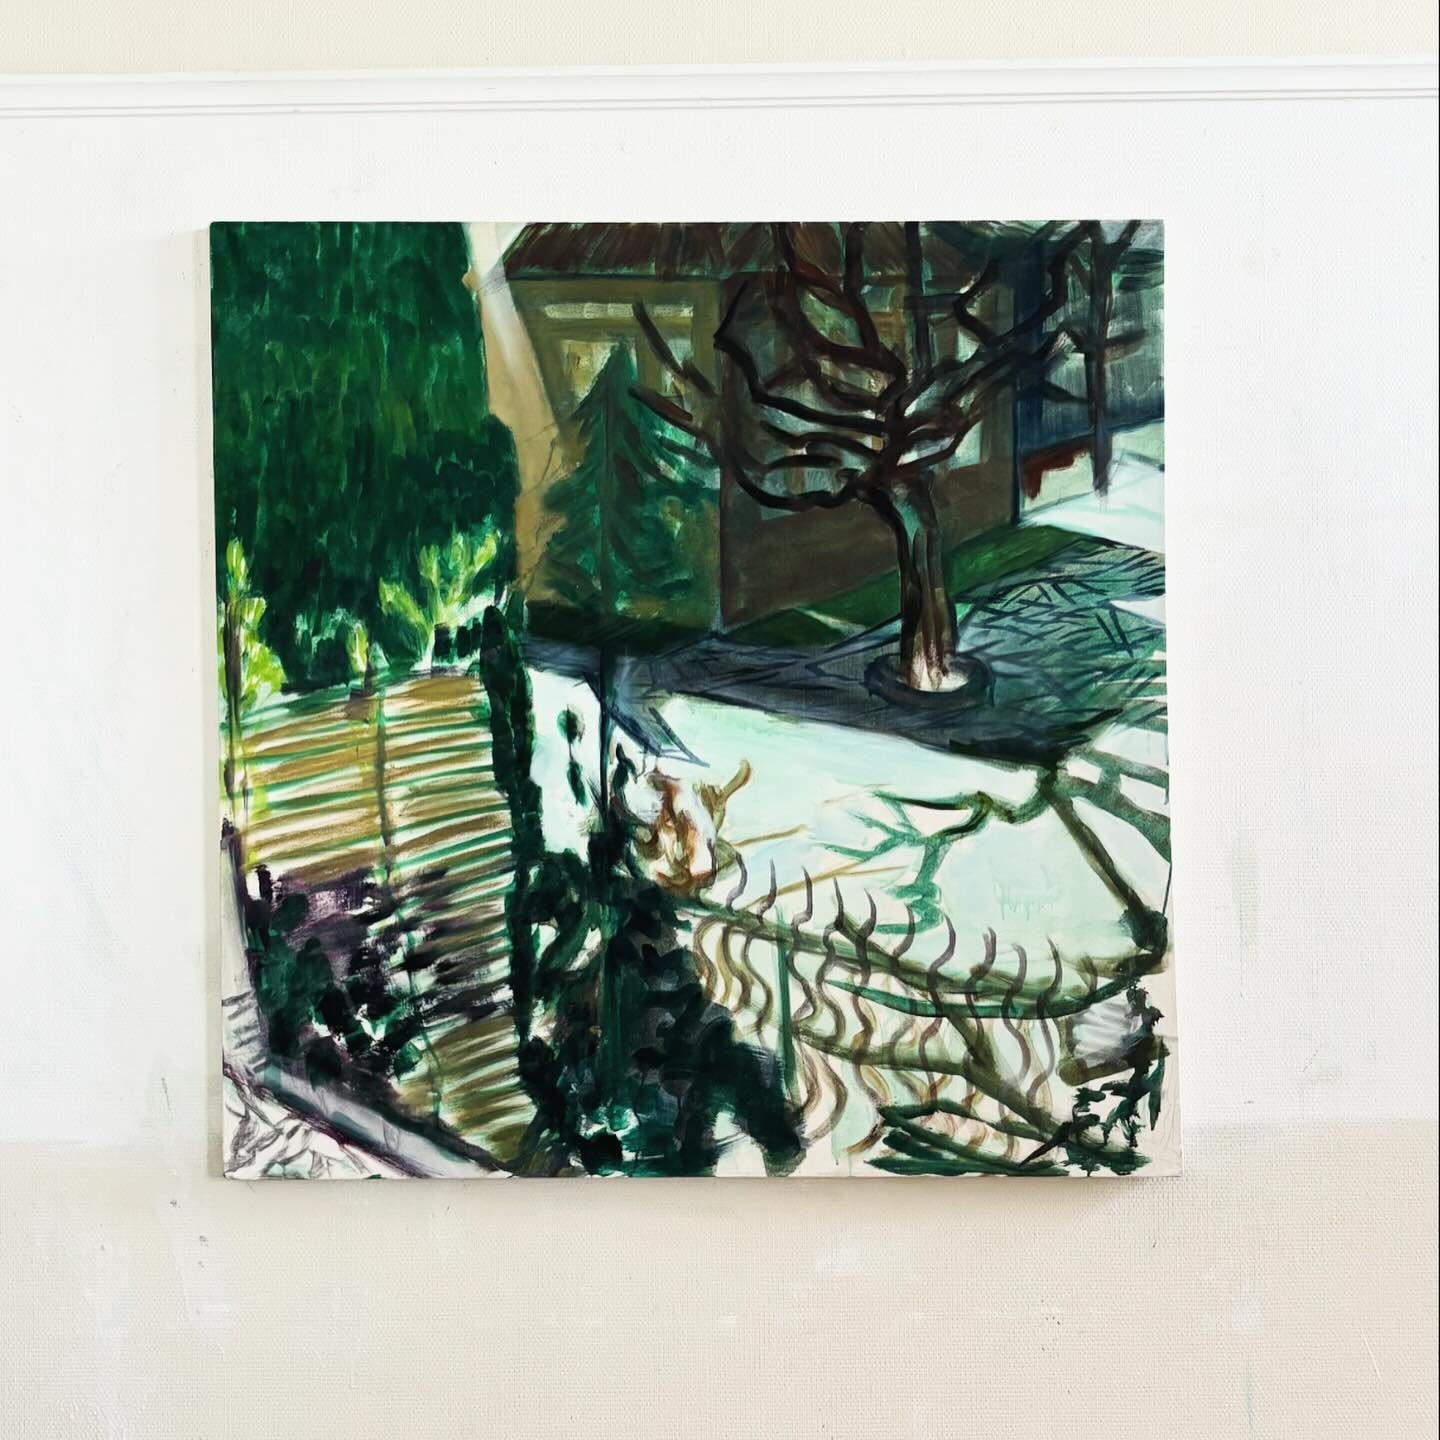 &lsquo;De plataan&rsquo; painting 2022. 120 by 120 cm #ralphdelange #contemporaryart 
#tree #plataan